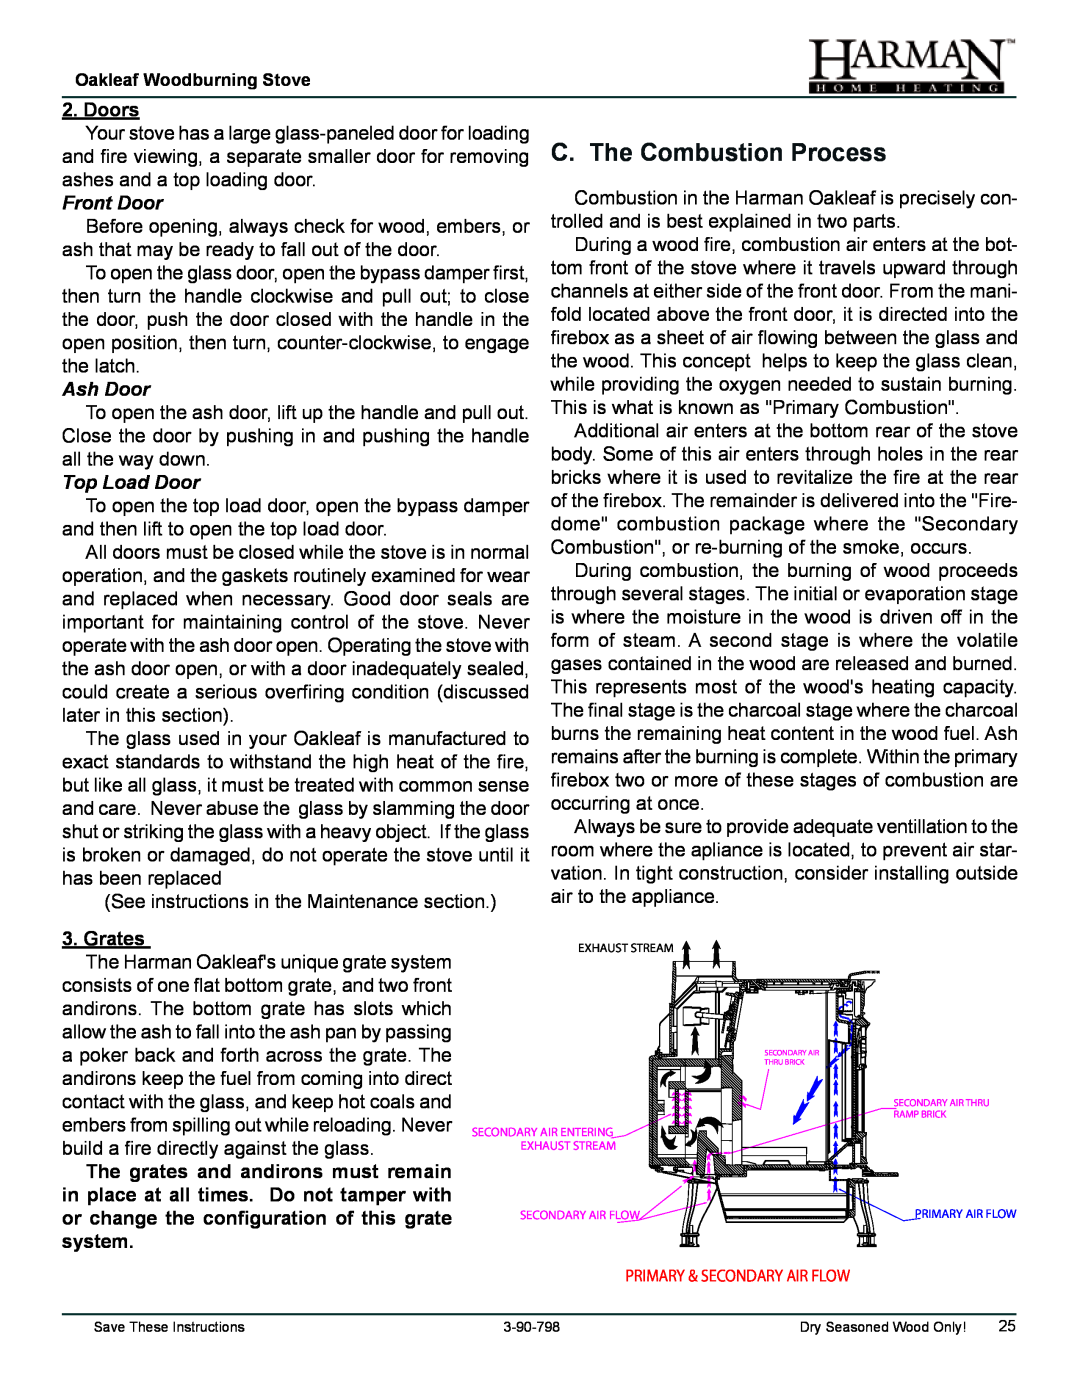 Harman Stove Company 1-90-797000 manual C. The Combustion Process, Doors, Front Door, Ash Door, Top Load Door, Grates 